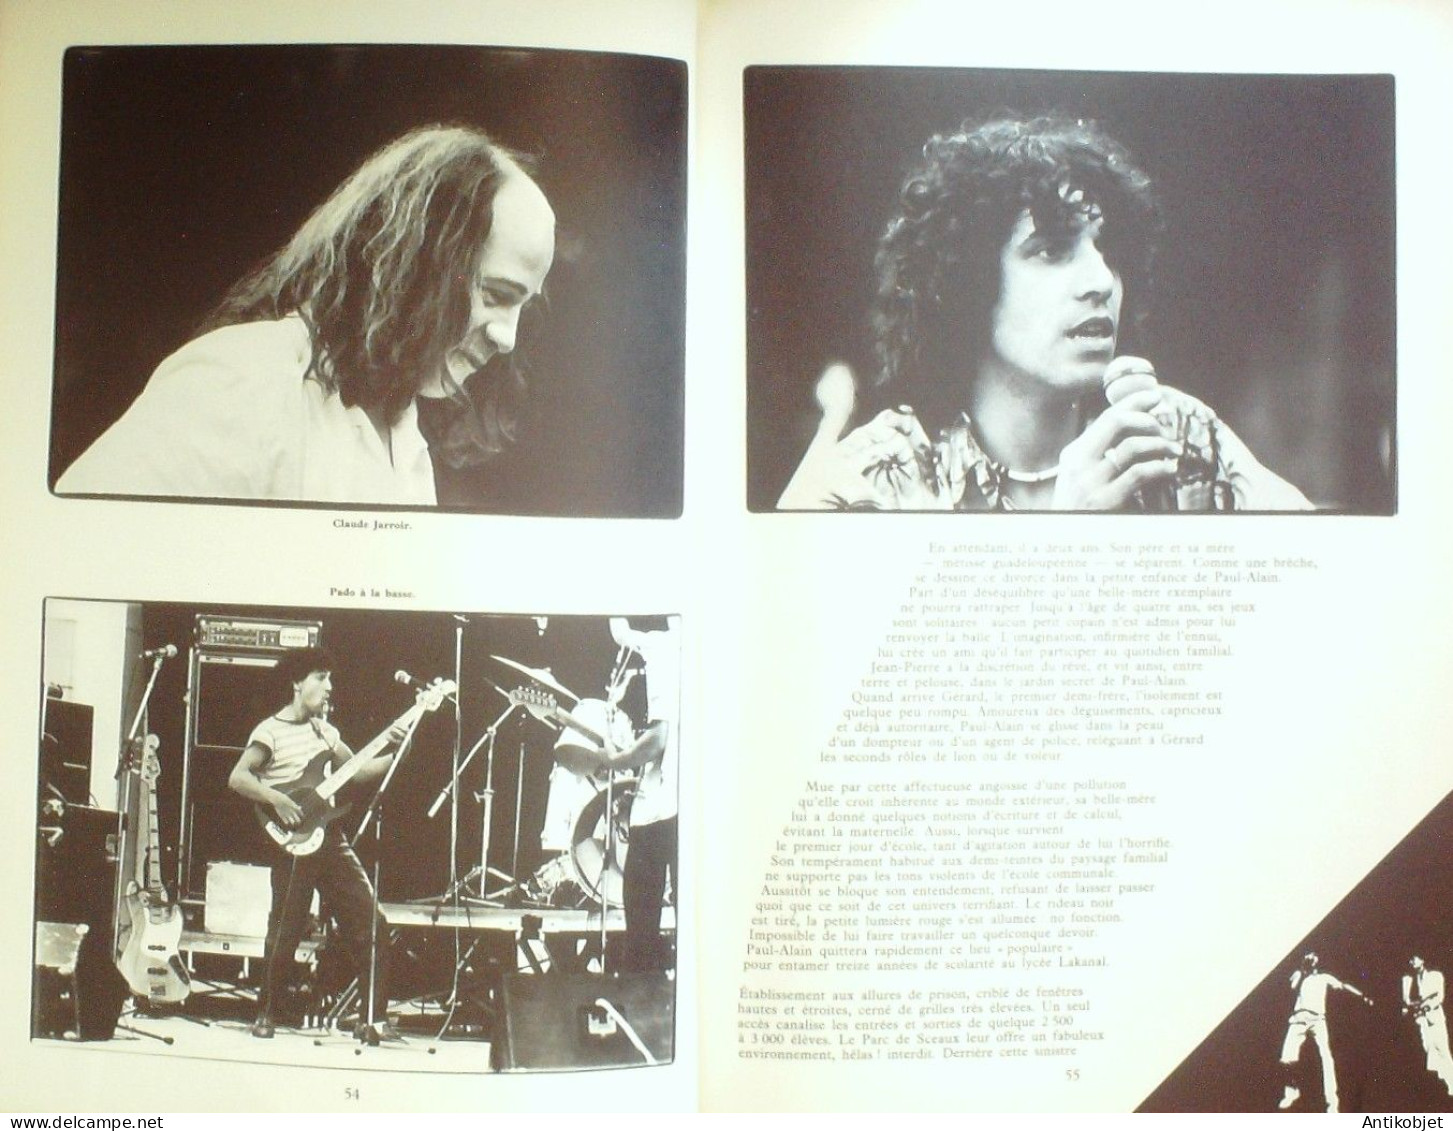 Clerc Julien Biographie De Tolbiac & Perrefeu Edit Bréa 1974 - Music